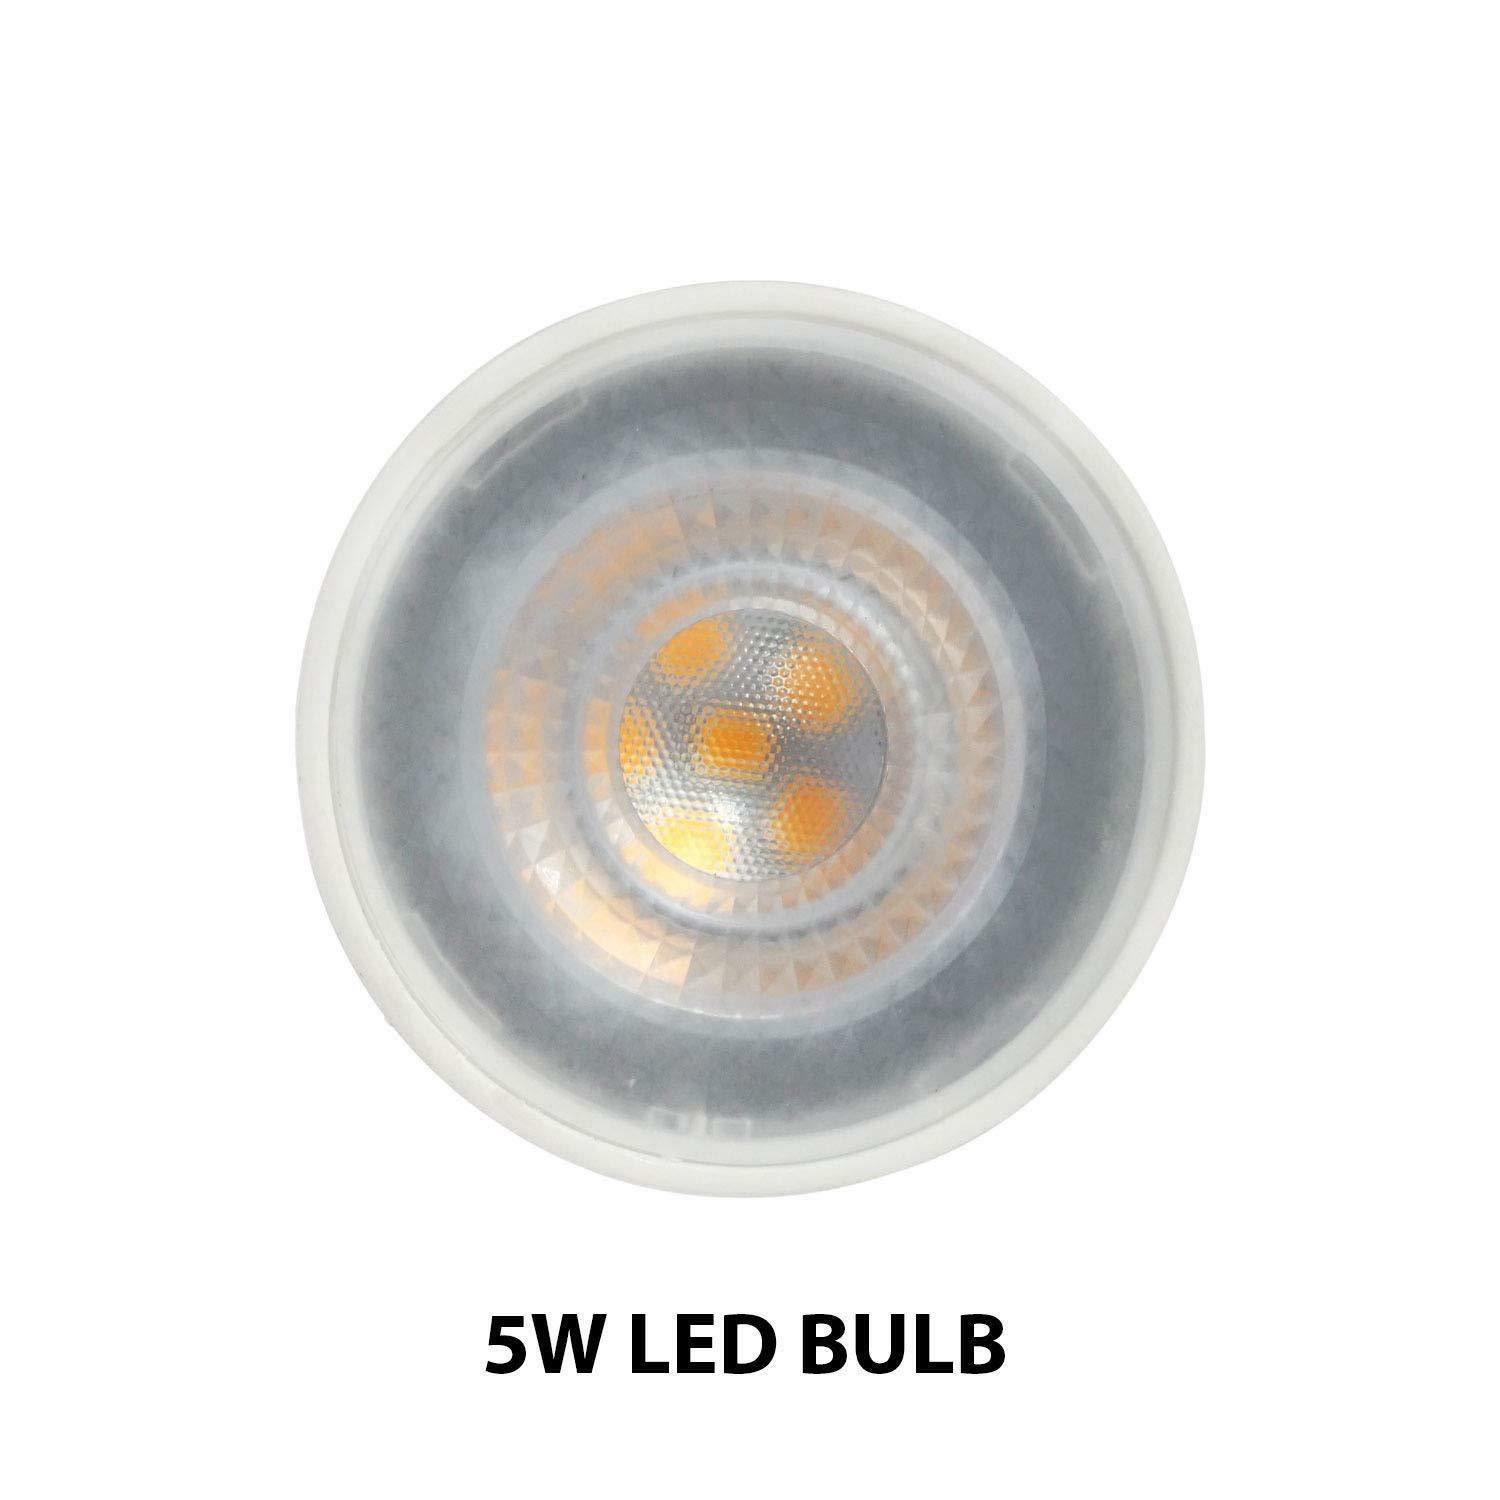 3 Way Flush Ceiling Light Fitting Spot Light White / Grey / Black LED lamp UKEW